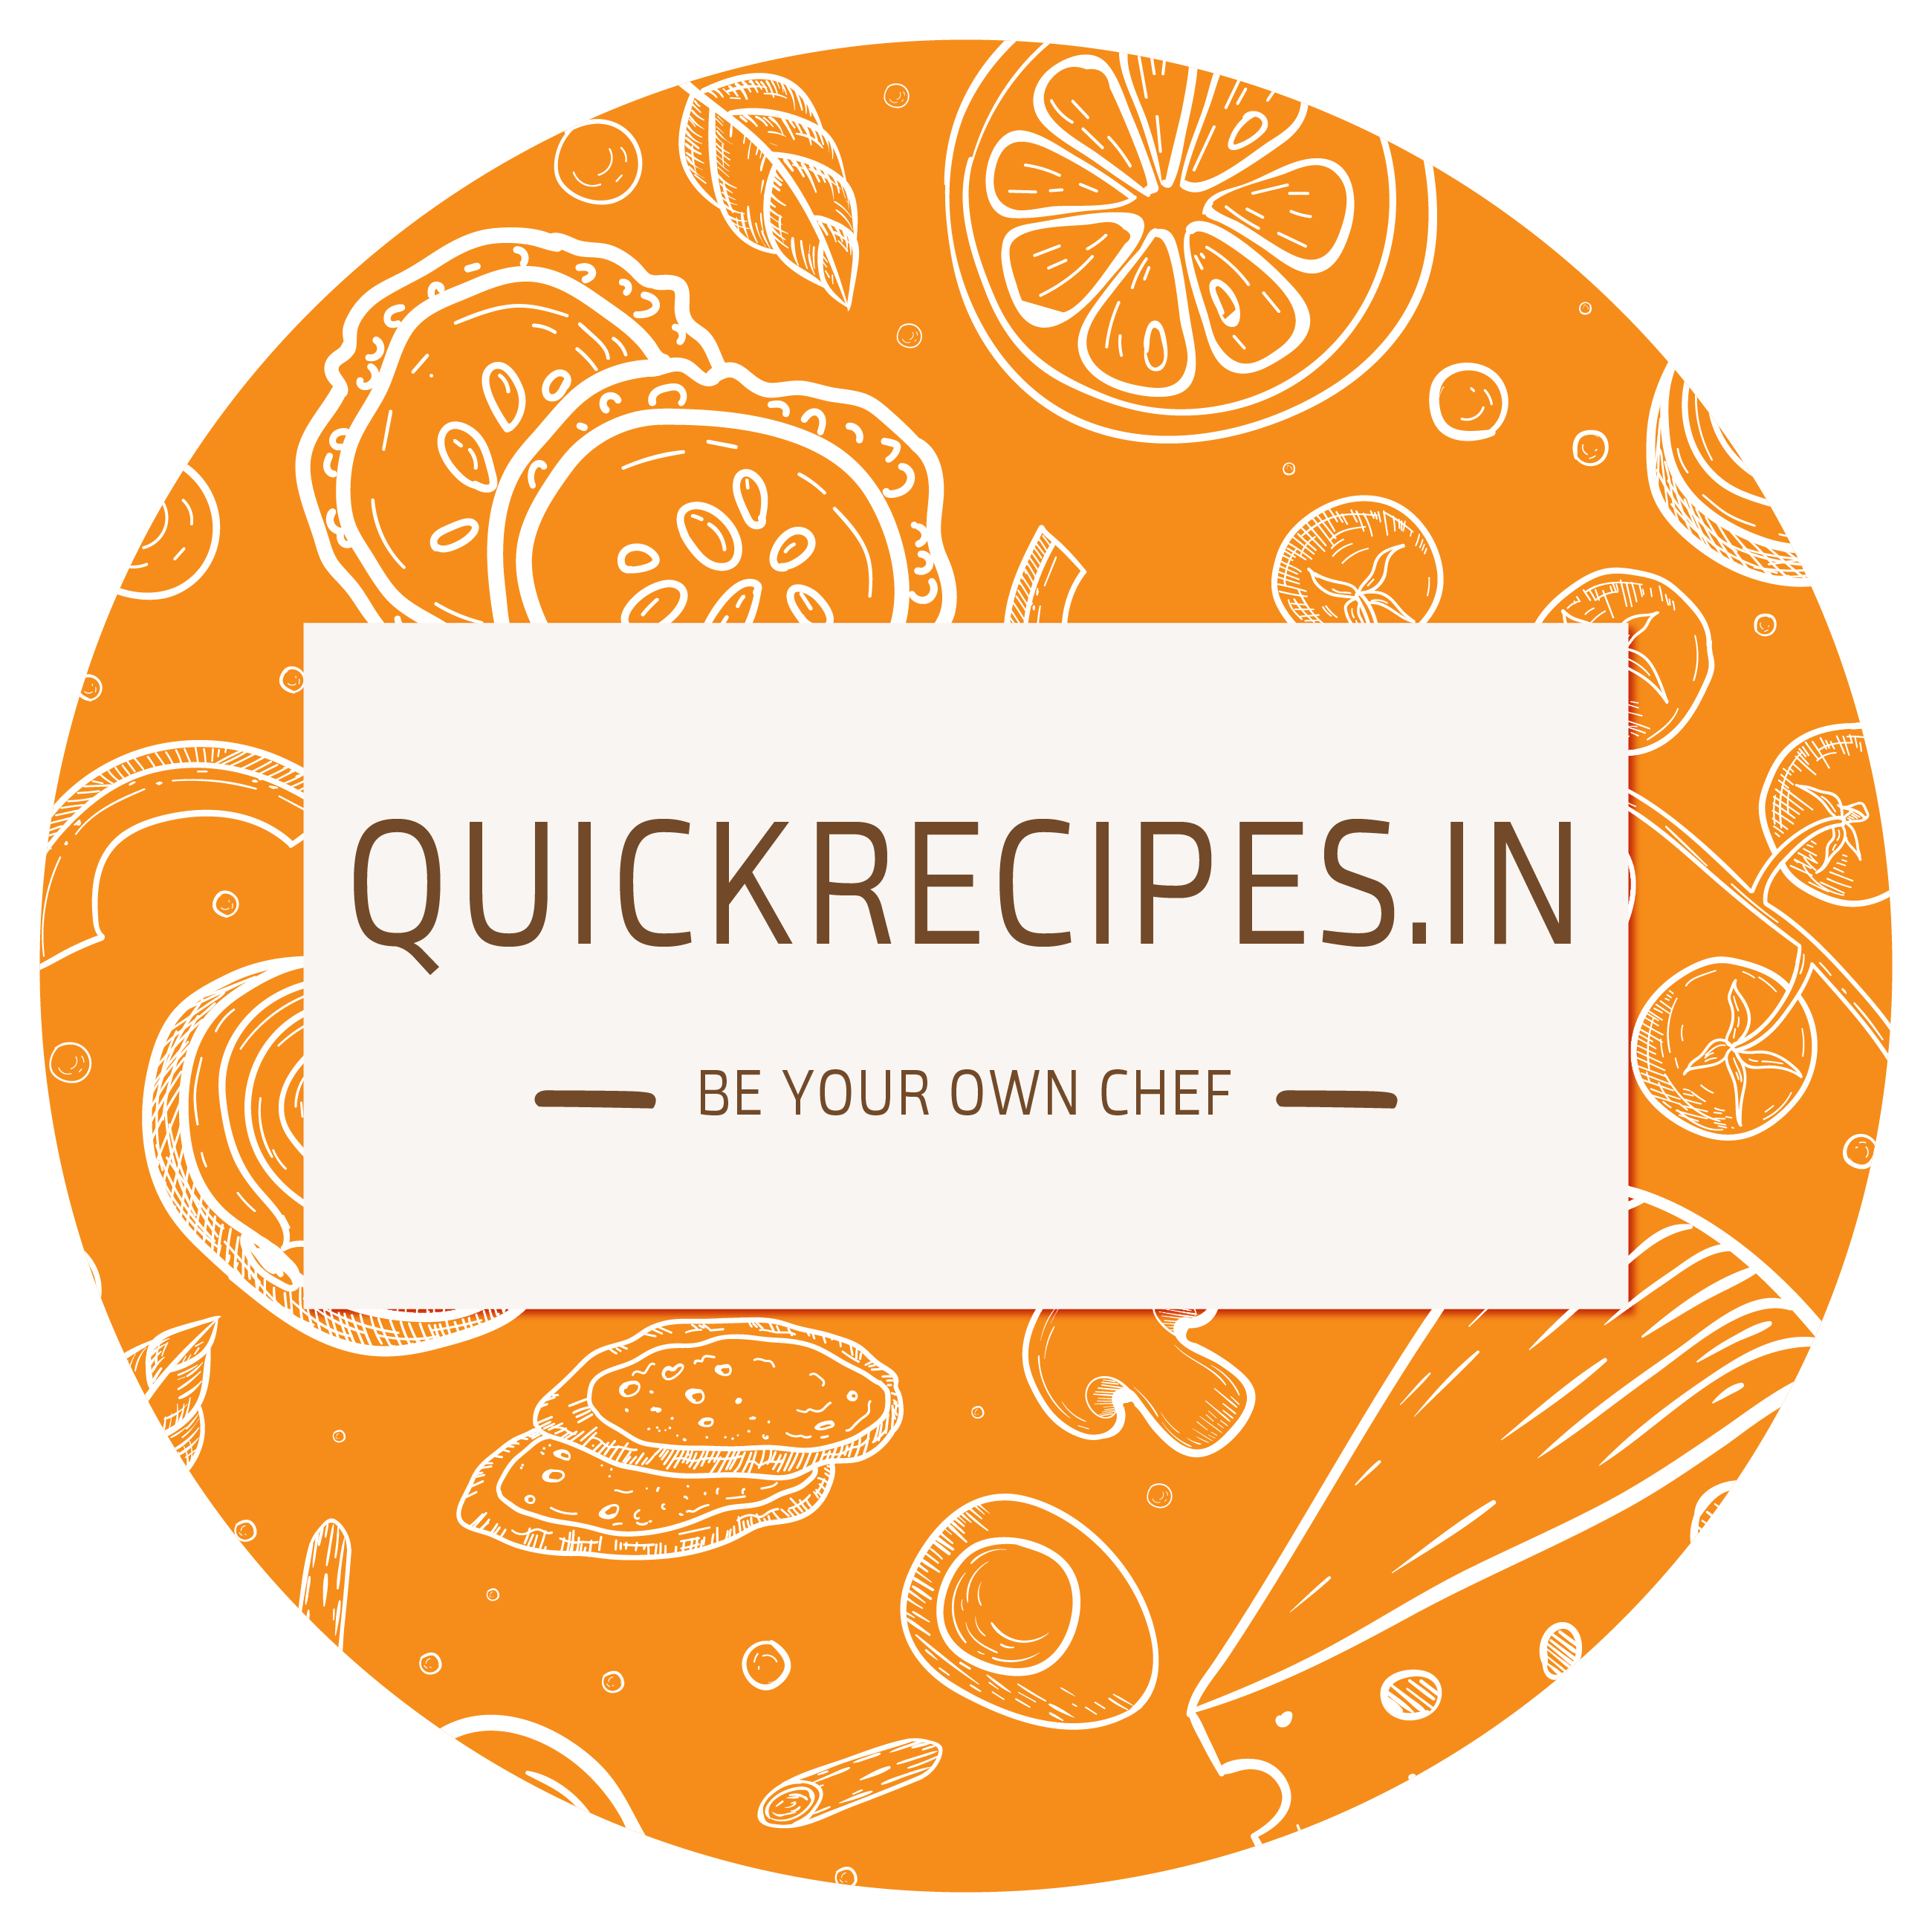 Quickrecipes.in